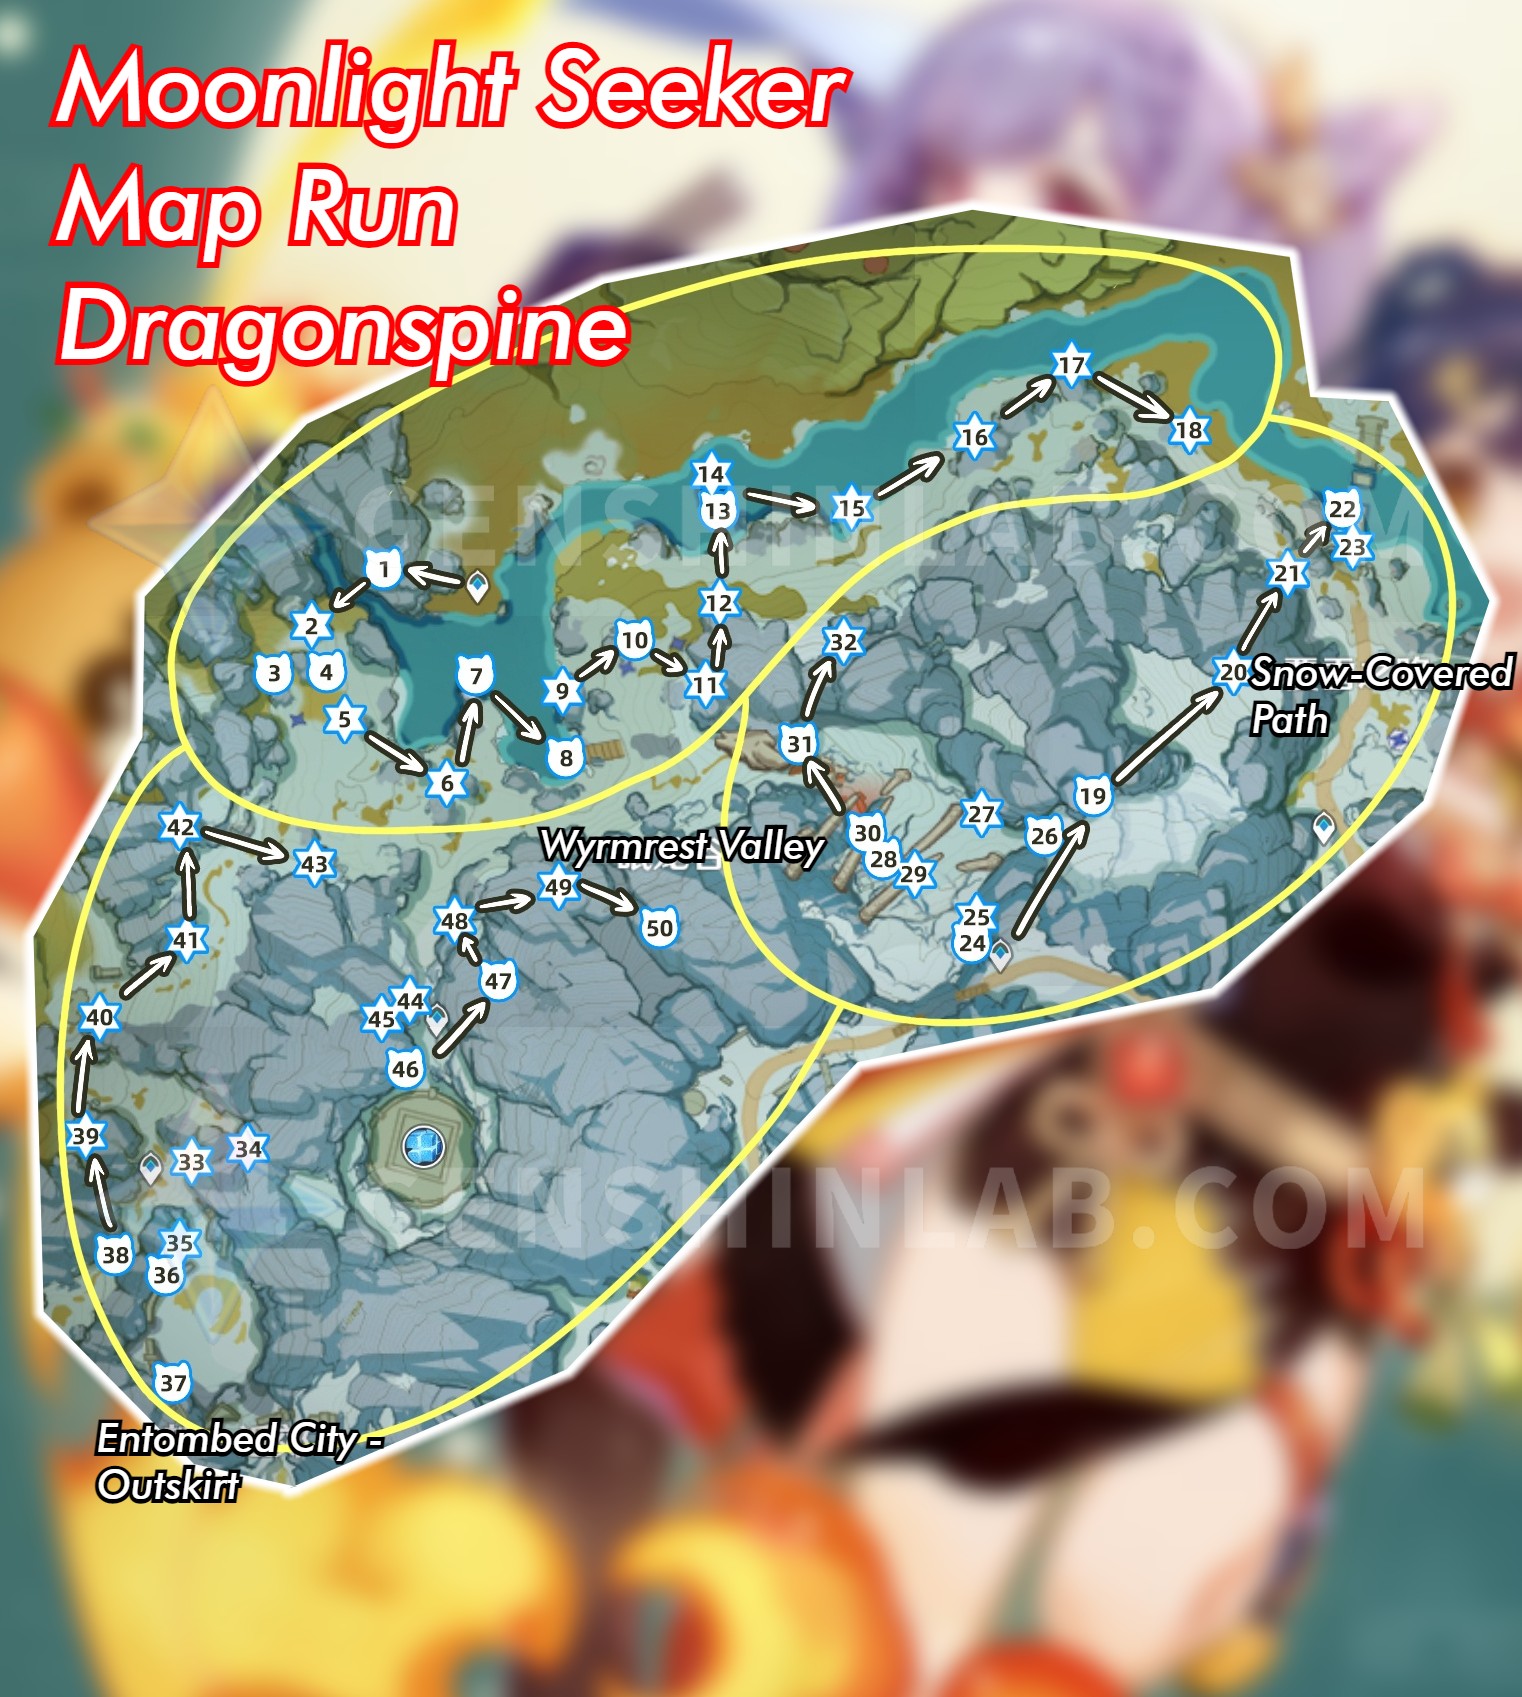 Dragonspine Moonlight Seeker Map Run